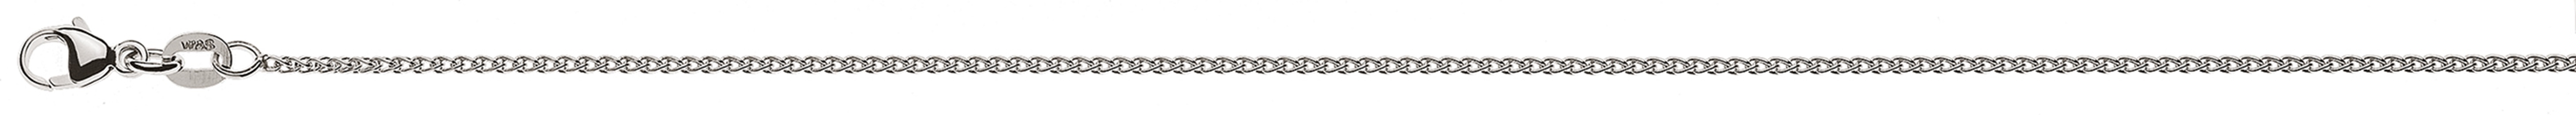 AURONOS Élégance Necklace white gold 14K cable chain 42cm 1.2mm